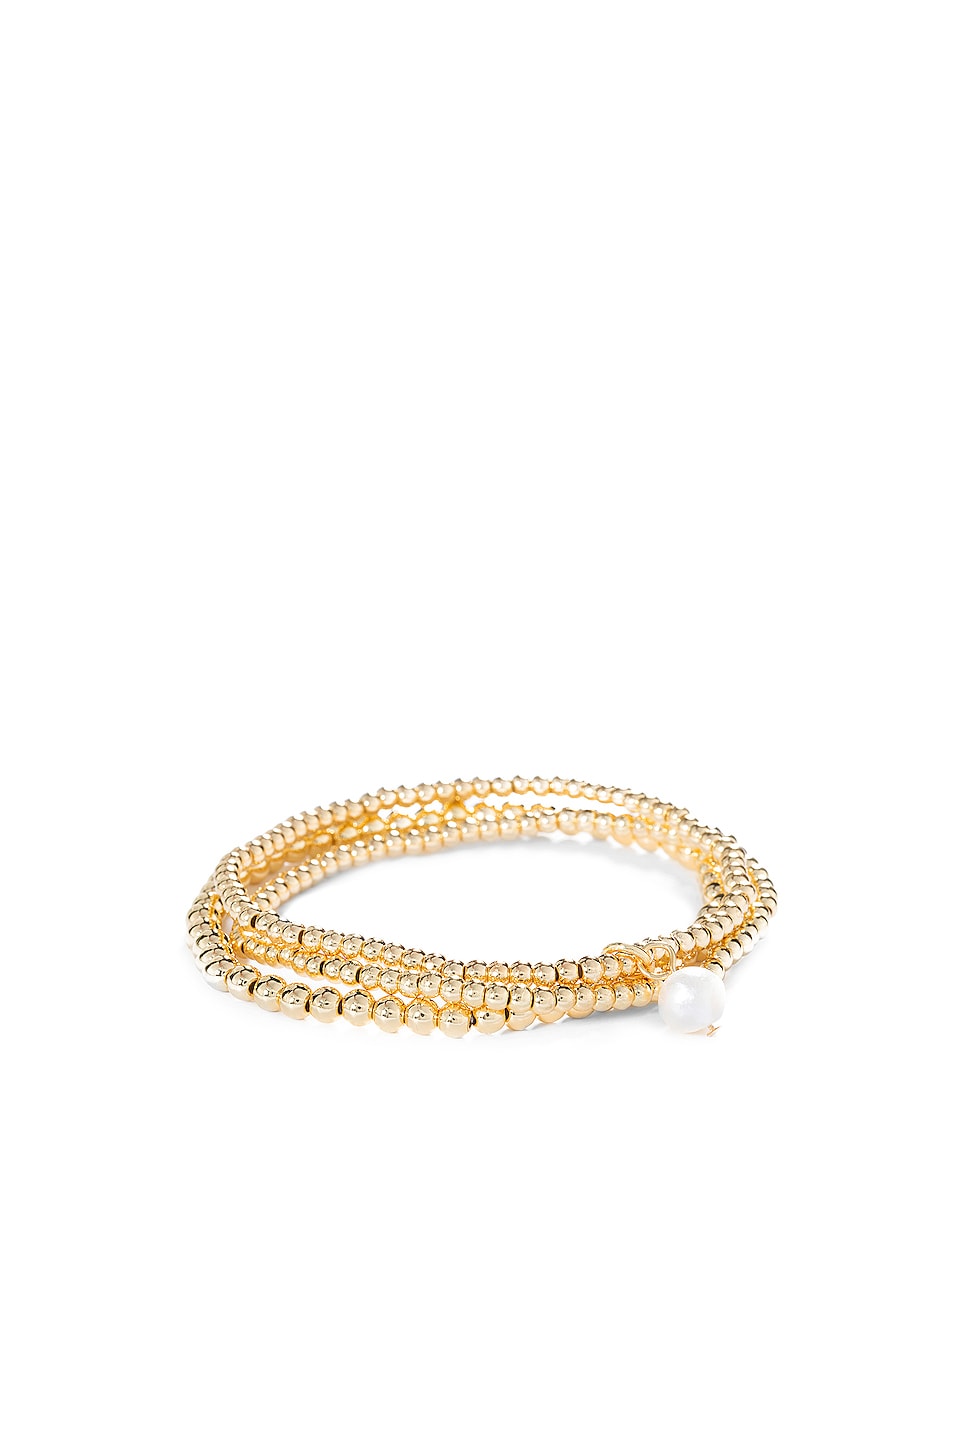 Empress Pearl Bracelet Set in Gold 